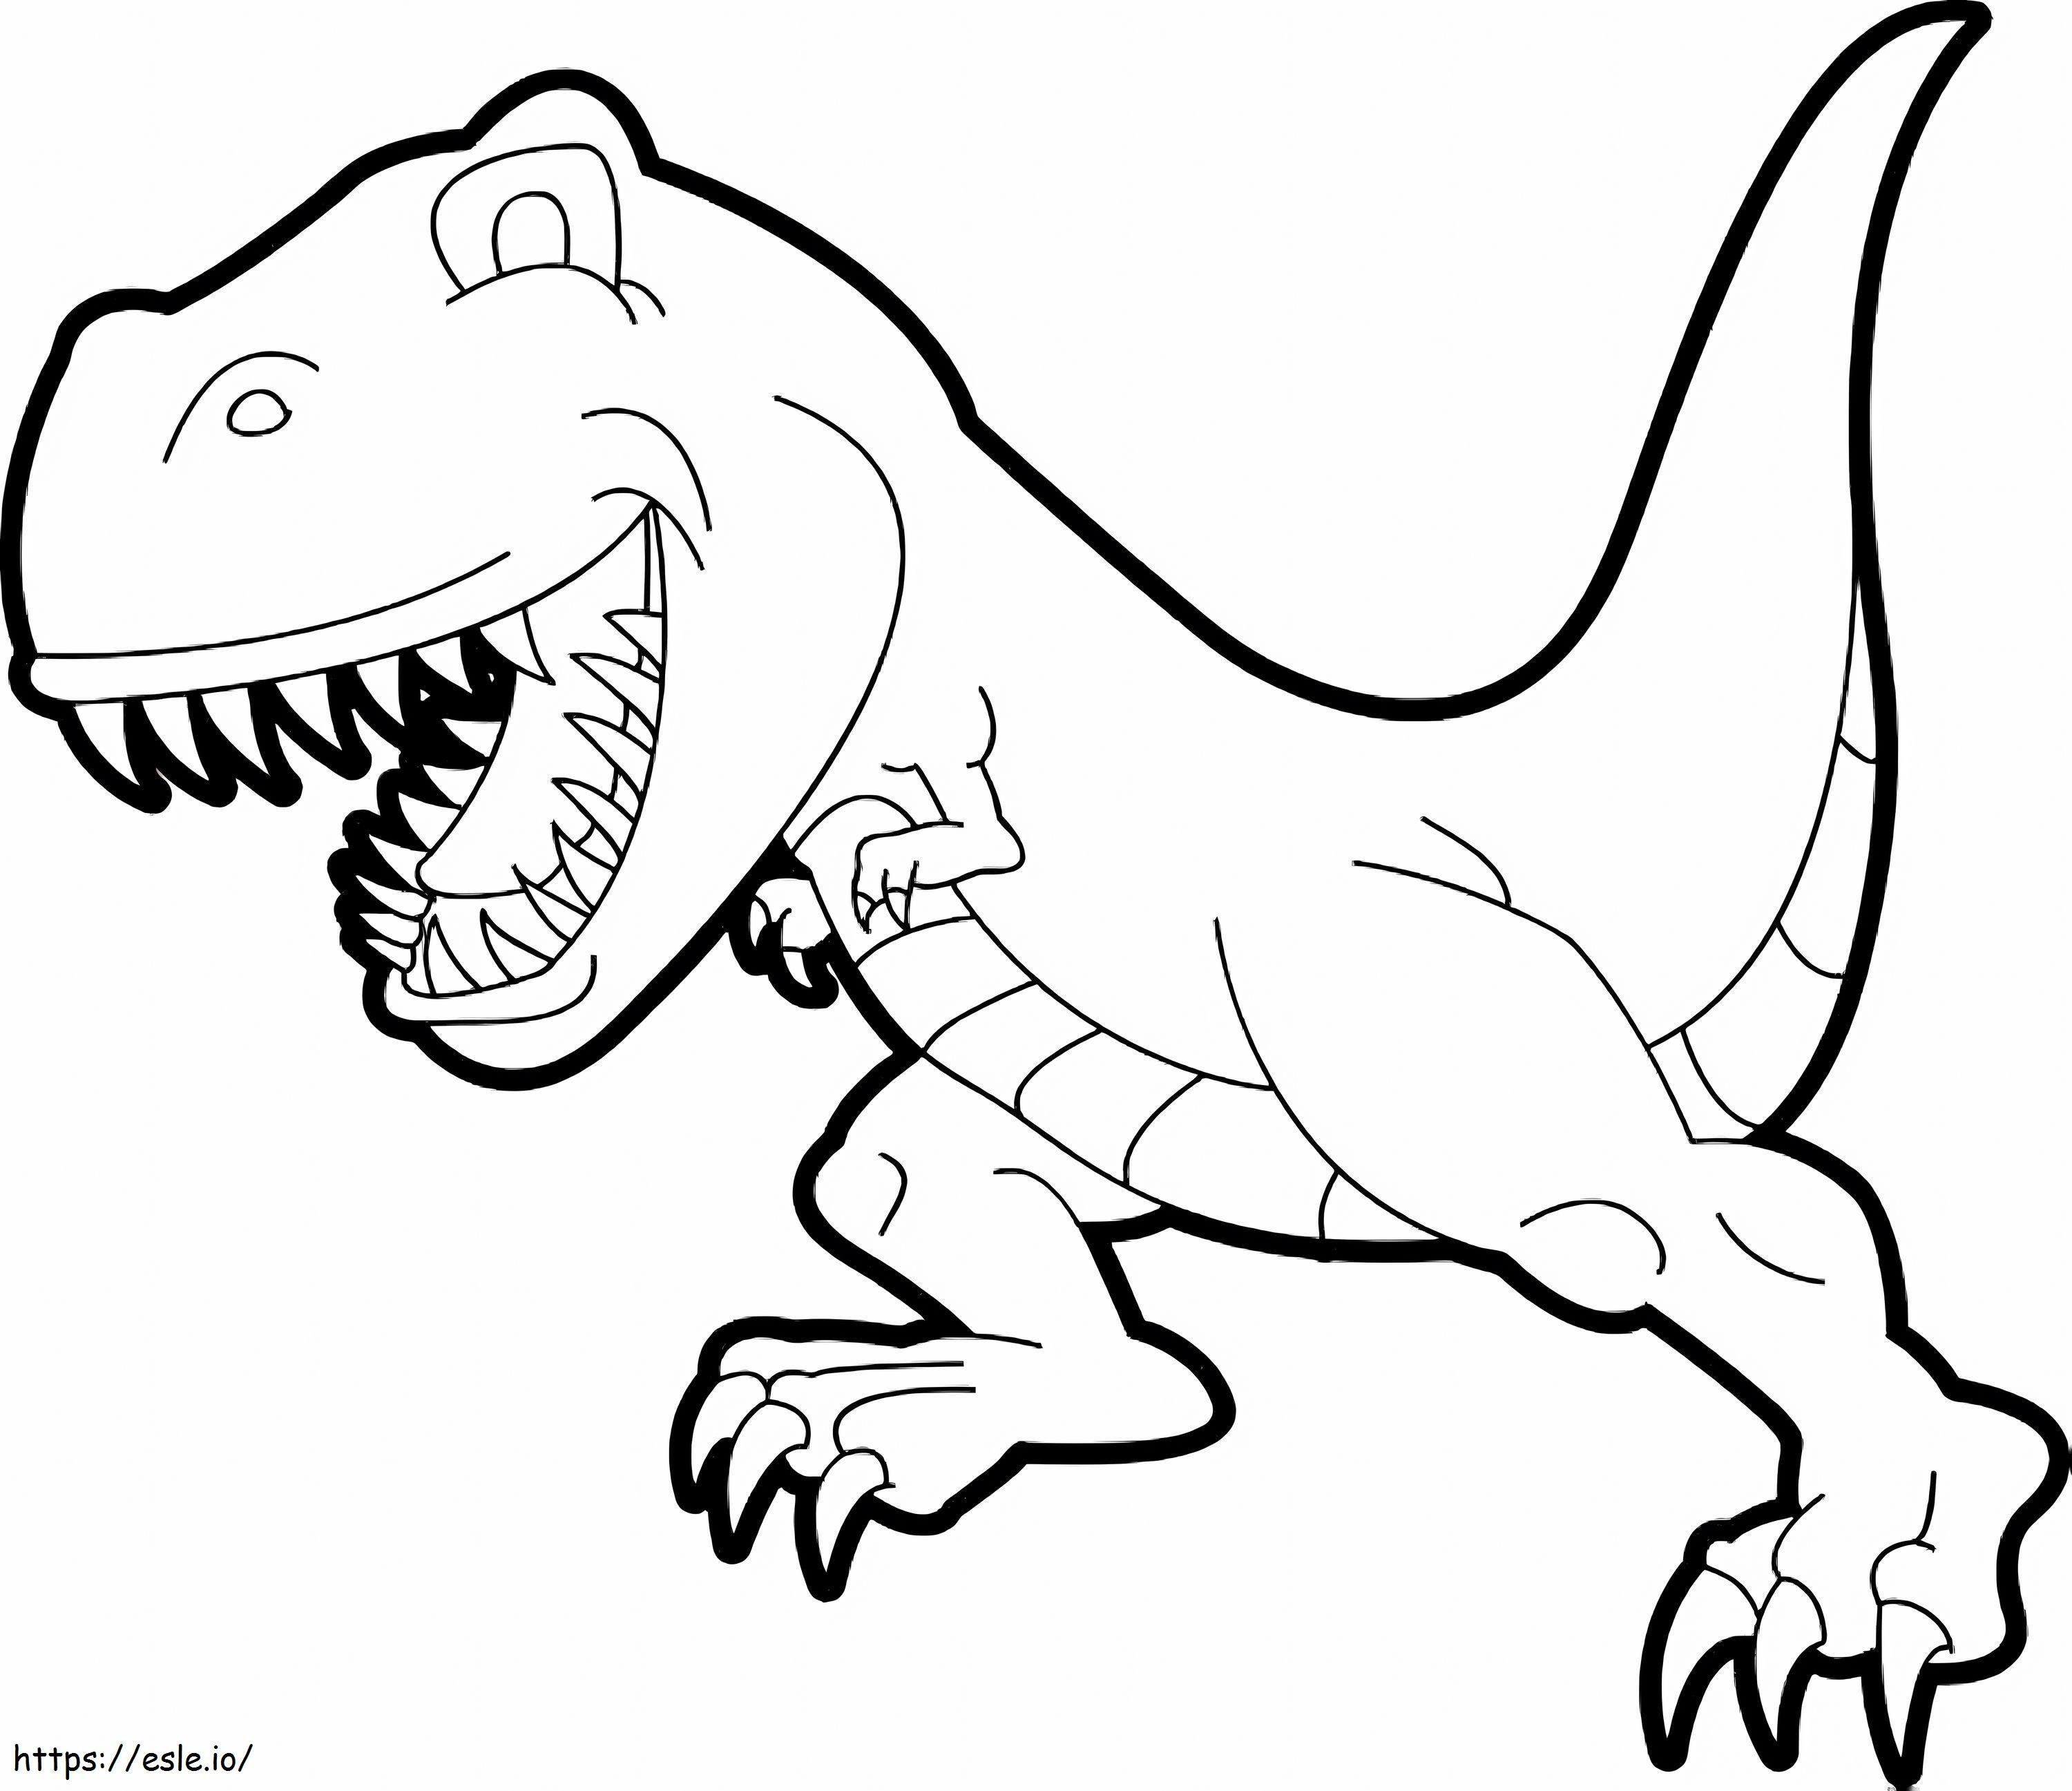 Coloriage 1539674613 Dessin T Rex Inspirationa Dinosaure Nouveau Dinosaure Simple Meilleur De Dessin T Rex à imprimer dessin